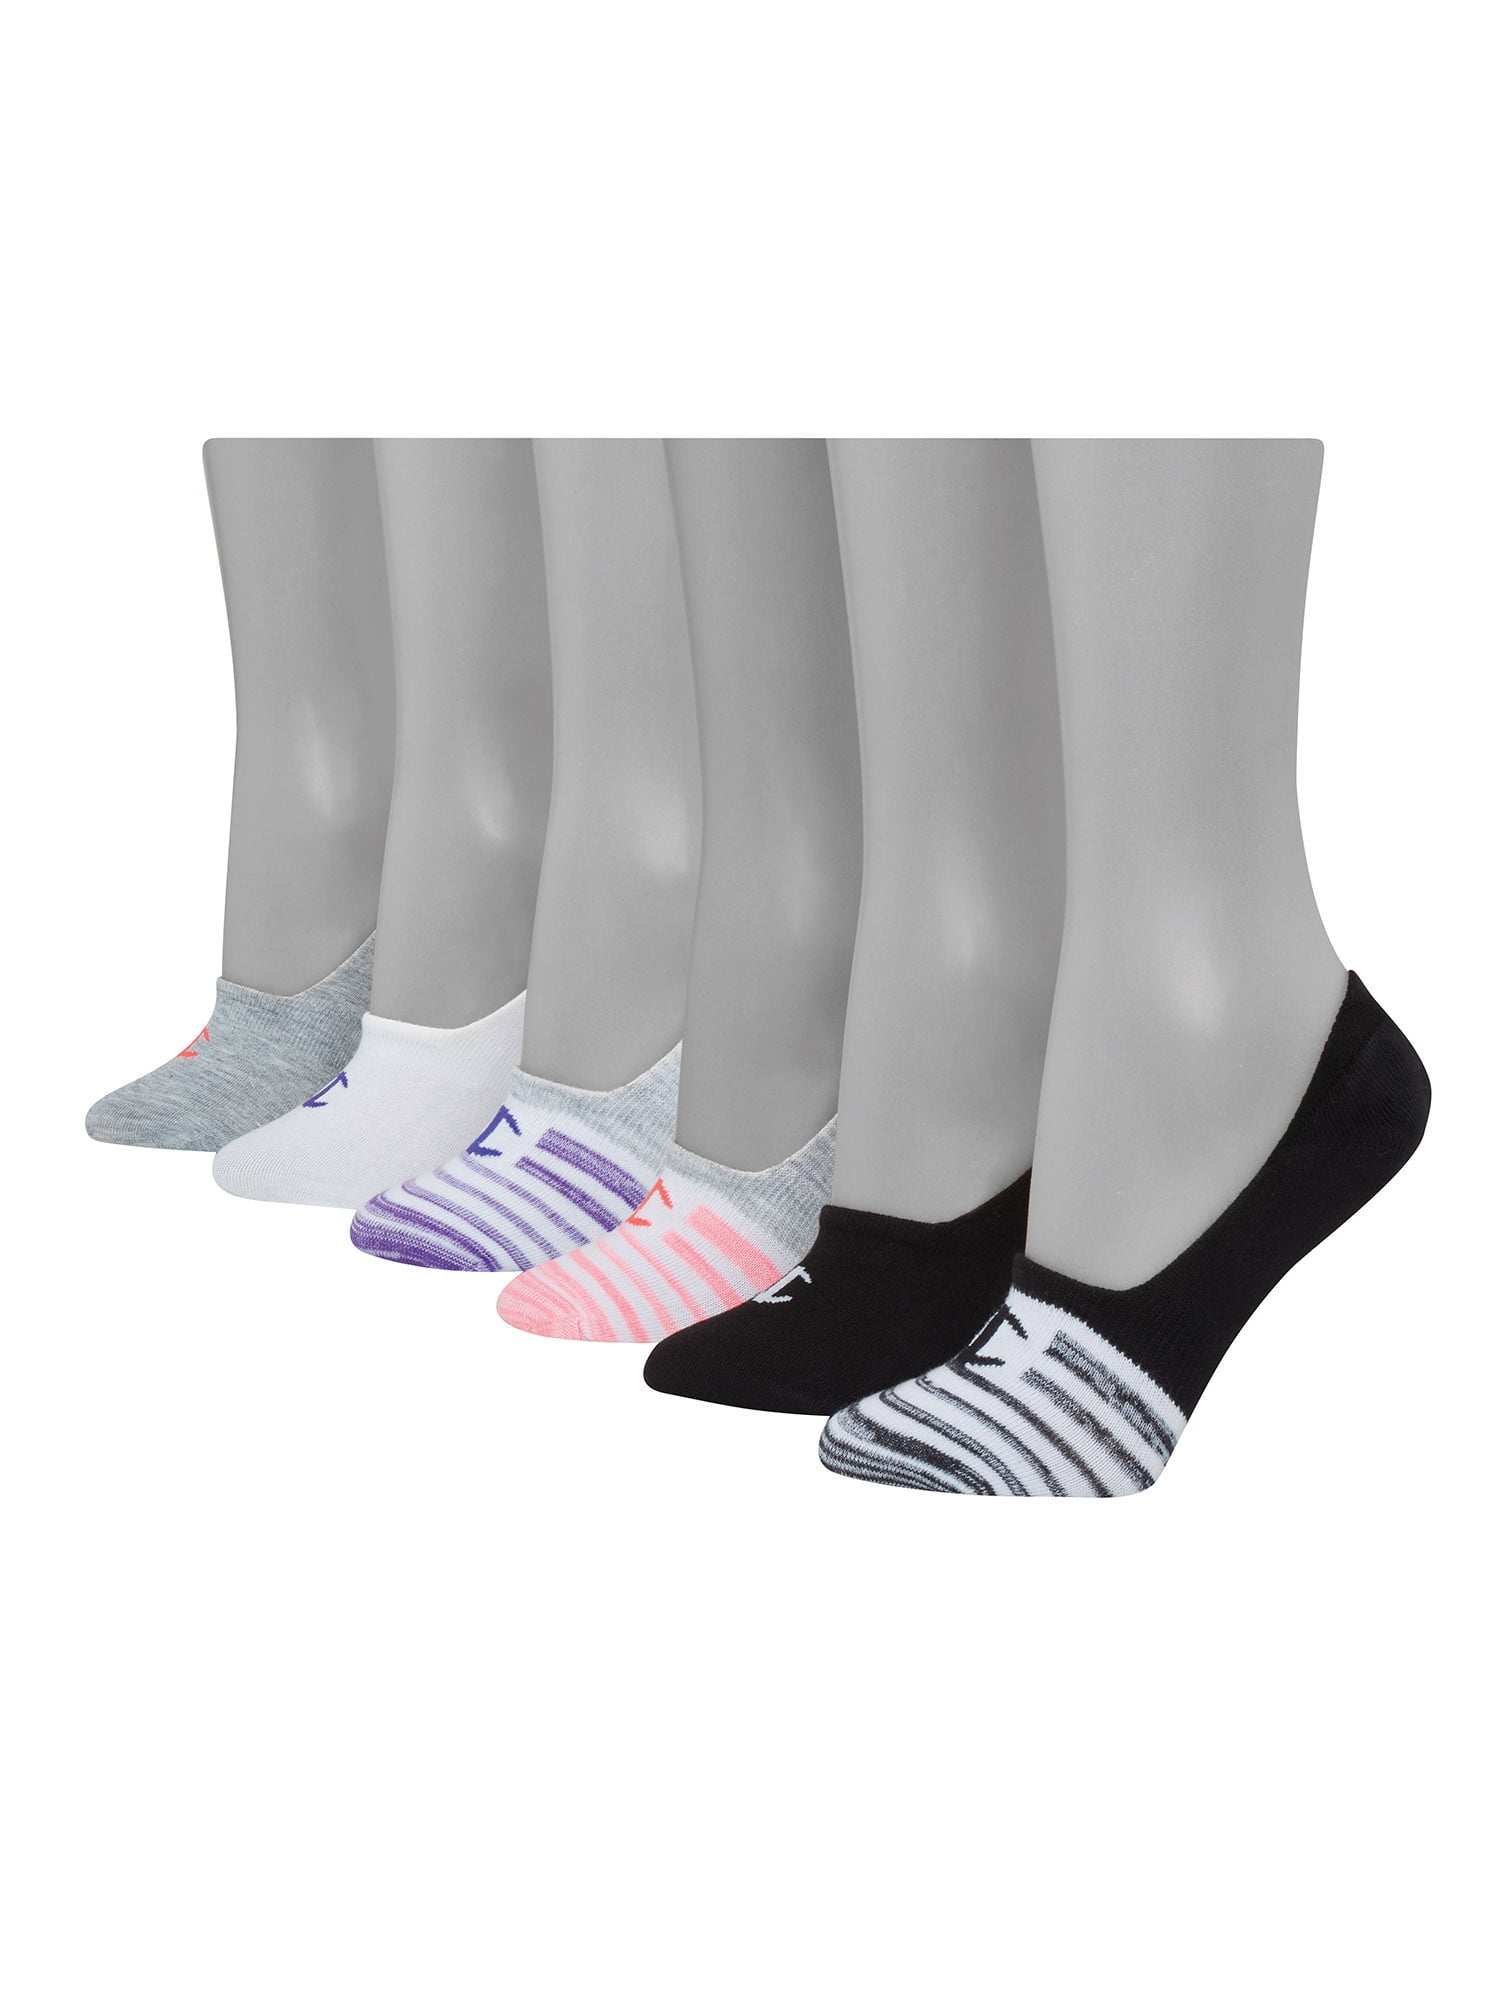 Womens Invisible Socks Ladies Summer Socks Shoe Liner Girl Footsies 6-12 Pair 